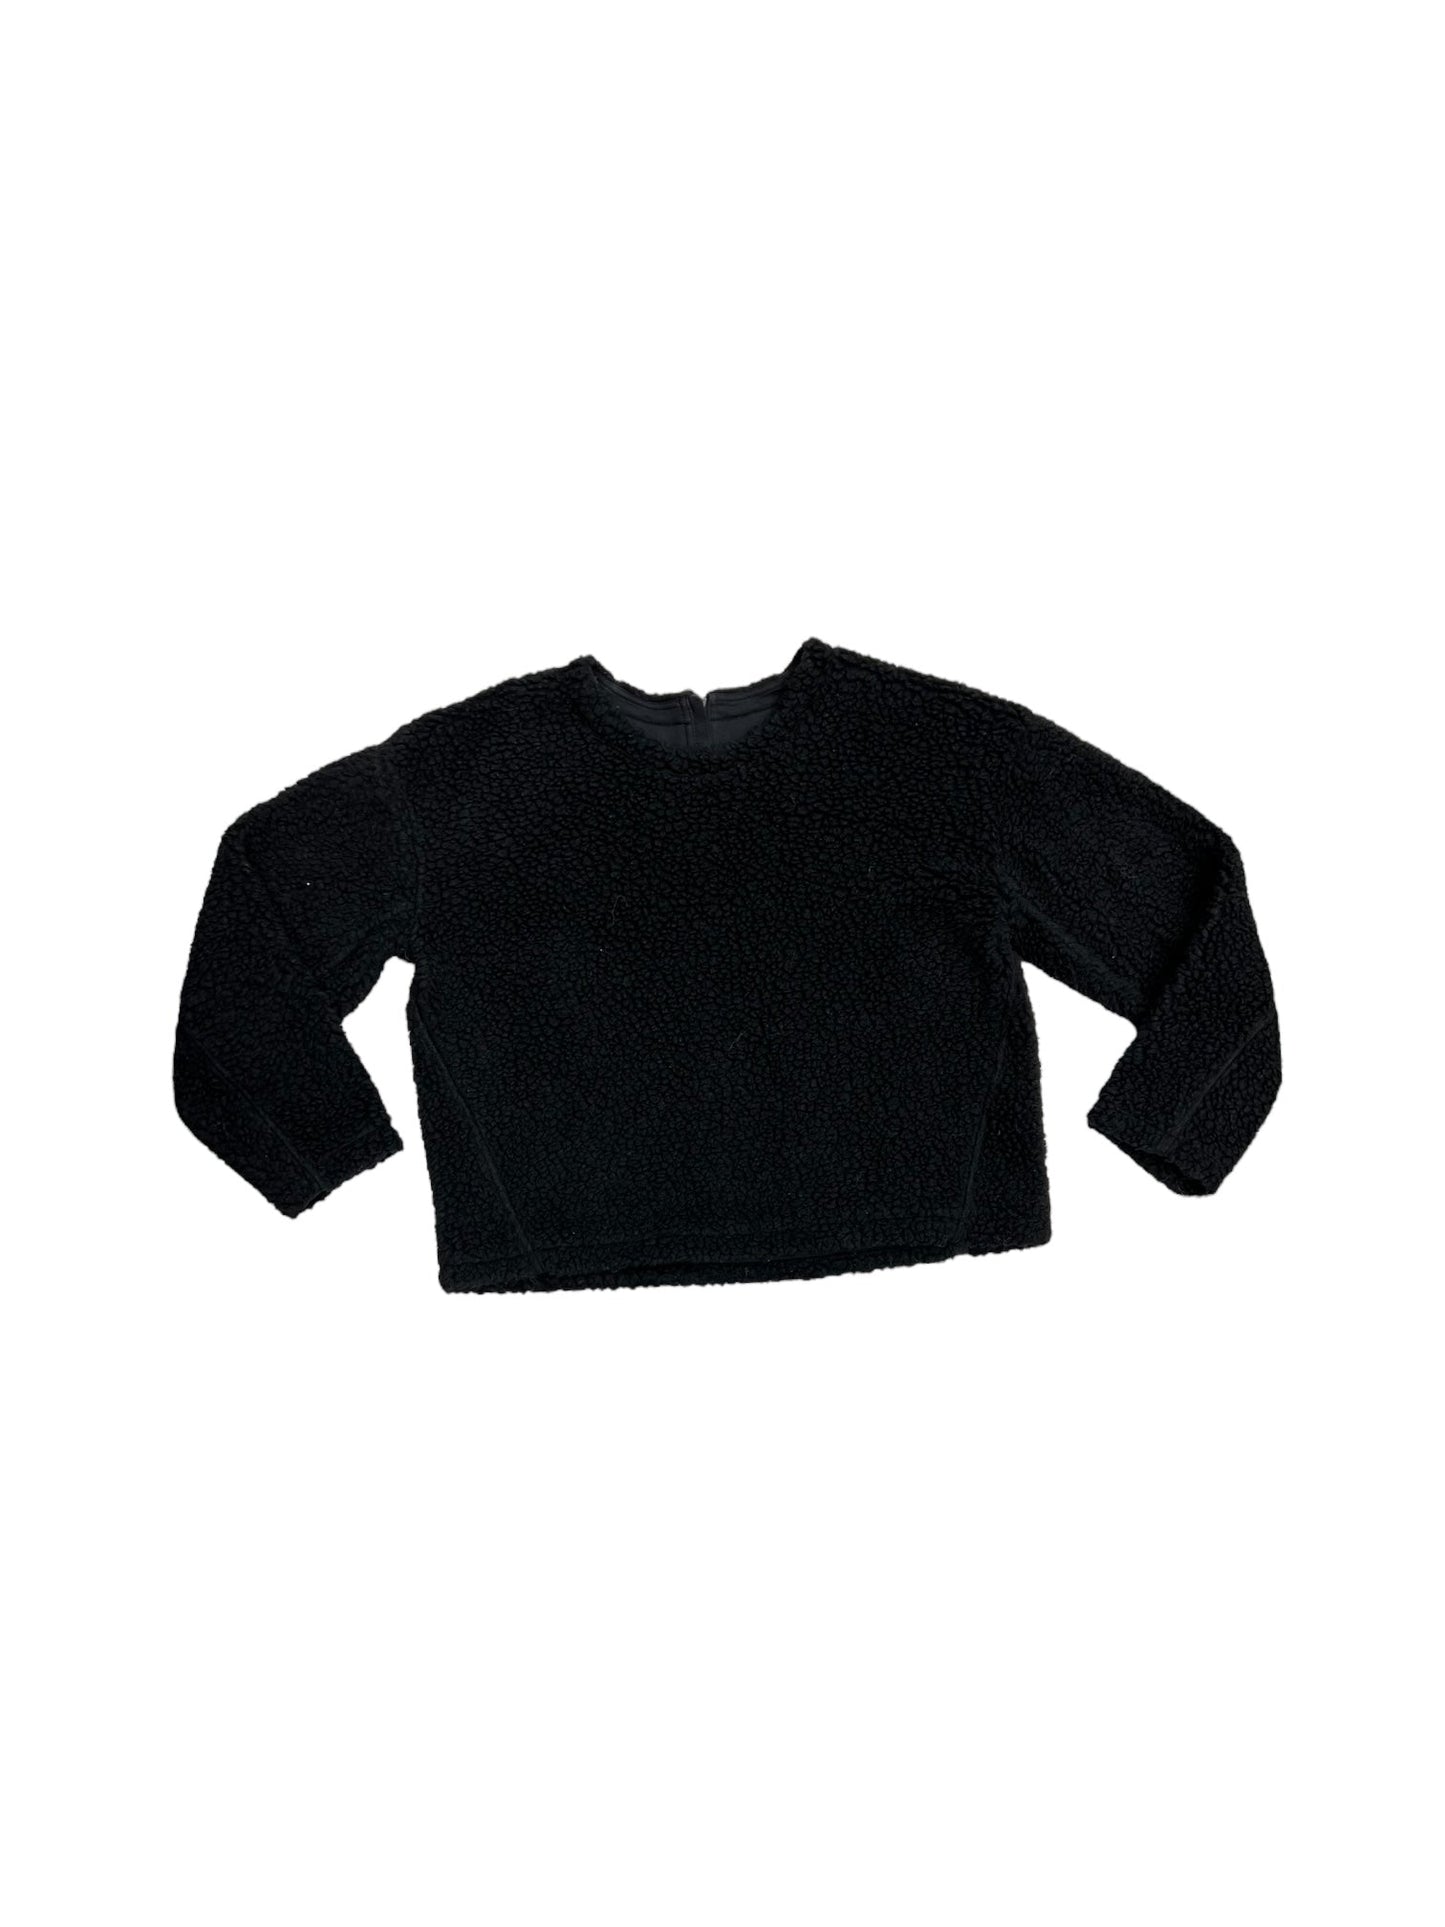 Black Sweater Lululemon